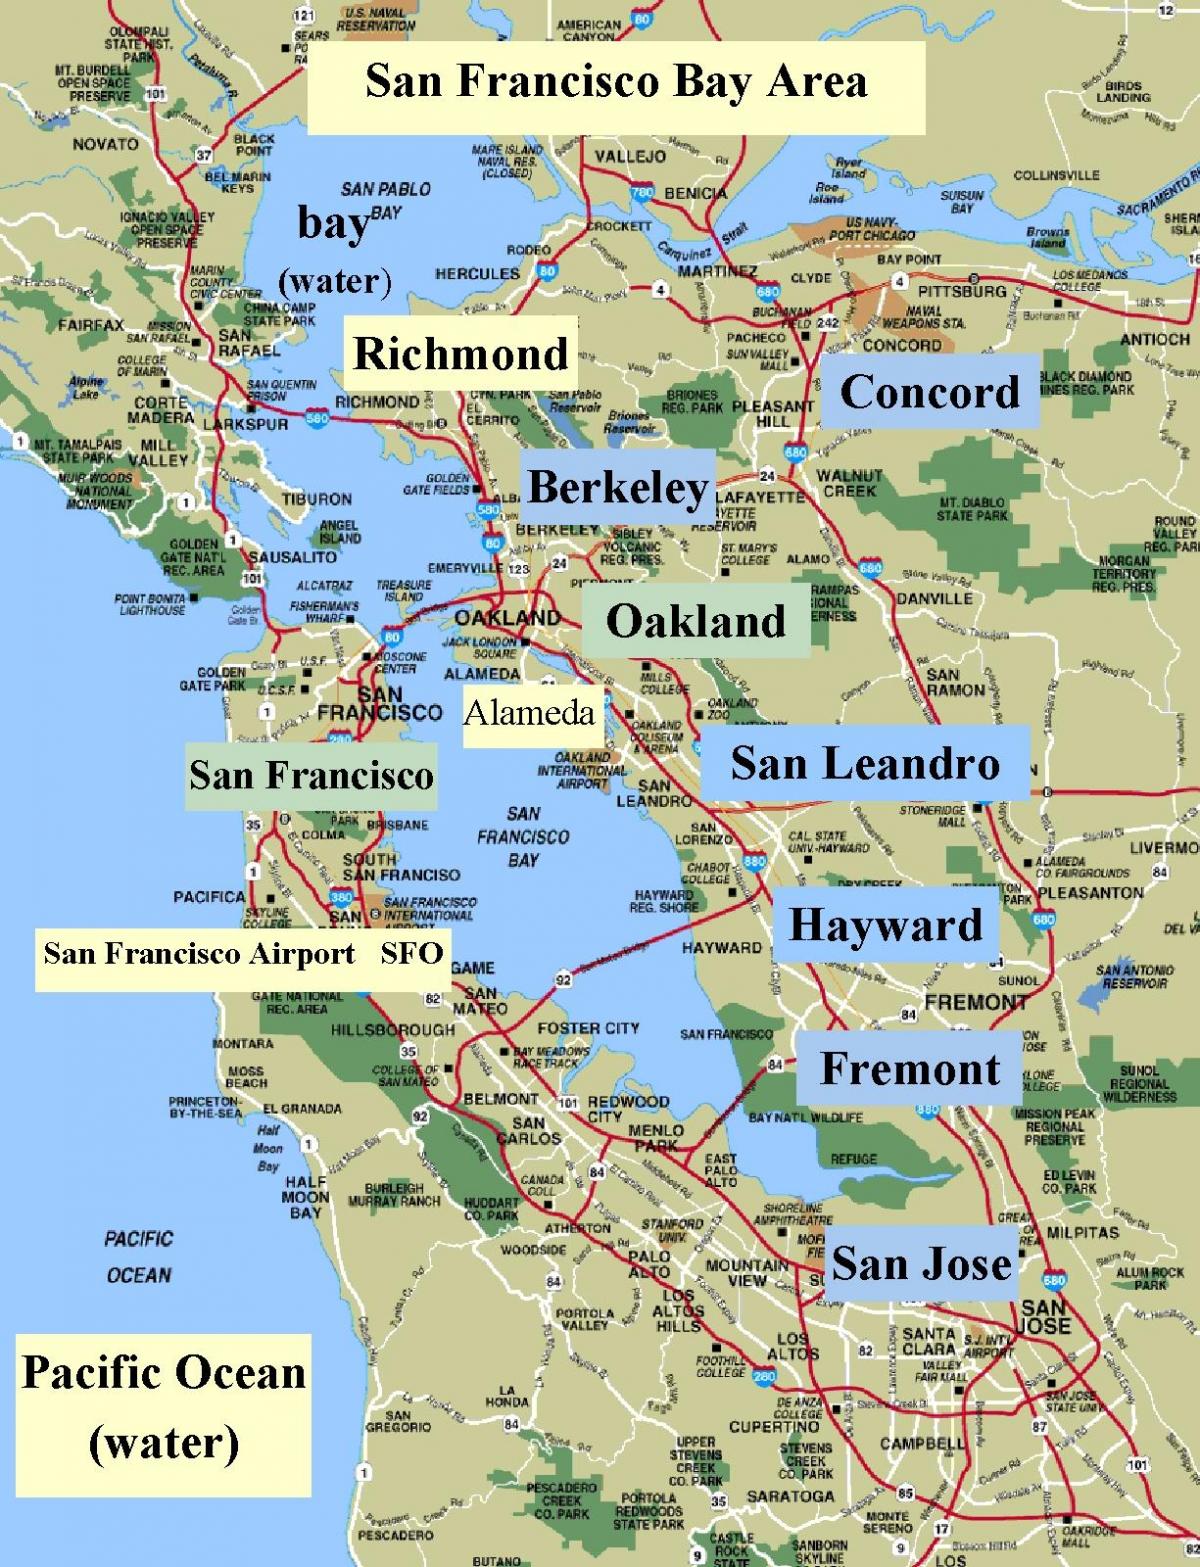 नक्शा सैन फ्रांसिस्को के कैलिफोर्निया क्षेत्र